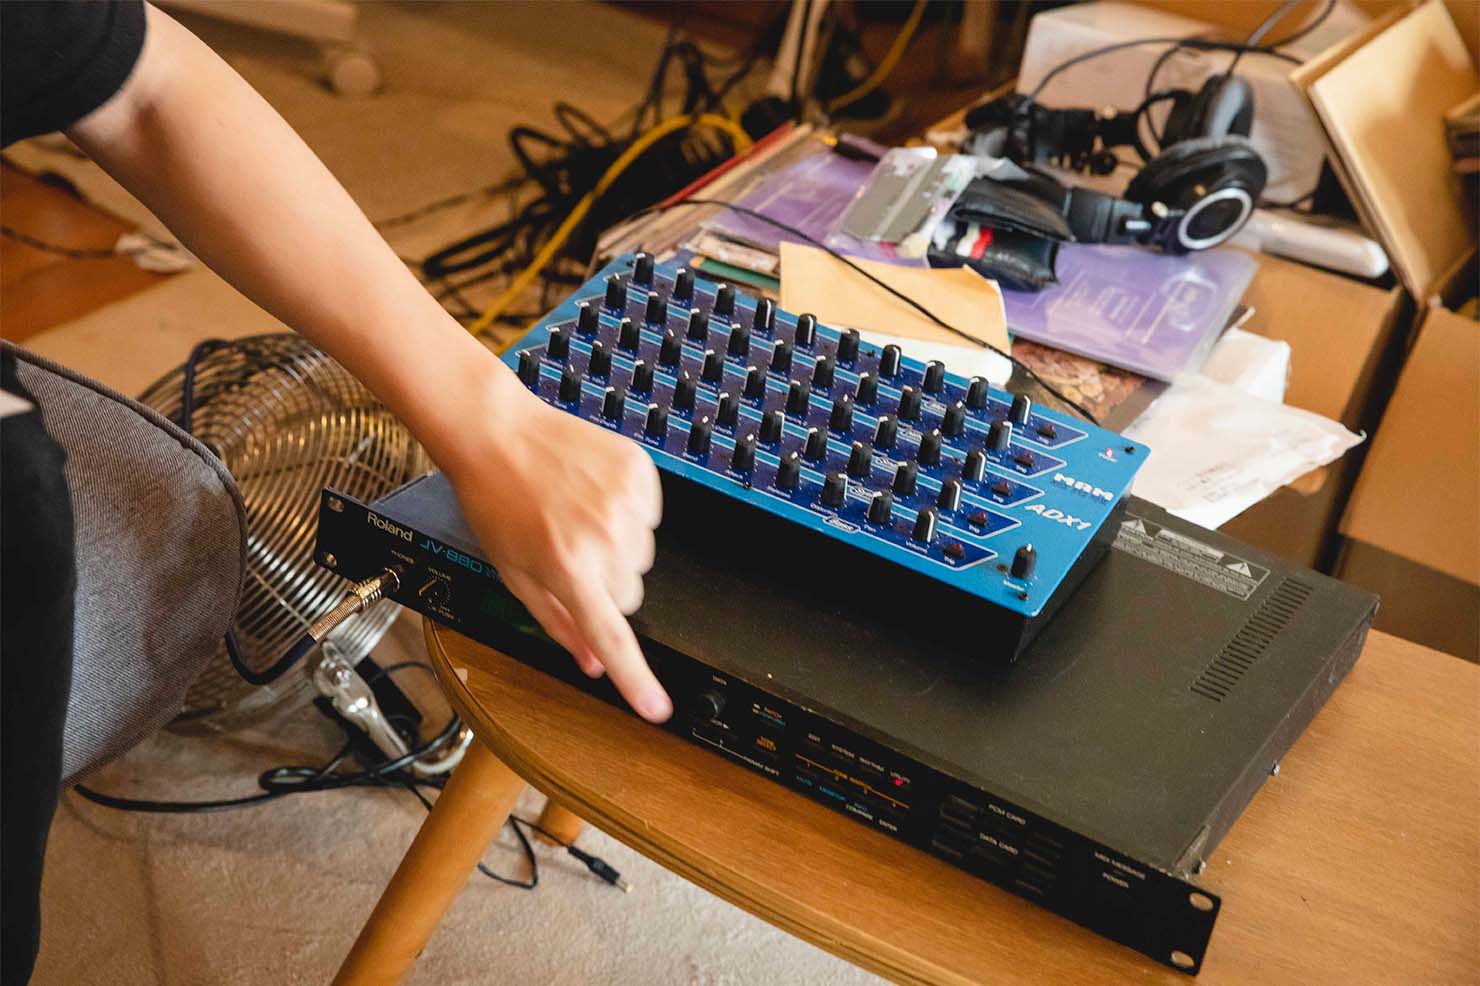 下段の黒い筐体が1992年に発売されたRolandの音源モジュール、 JV-880。 上段の青い筐体はMAMのアナログドラム音源、ADX1。 